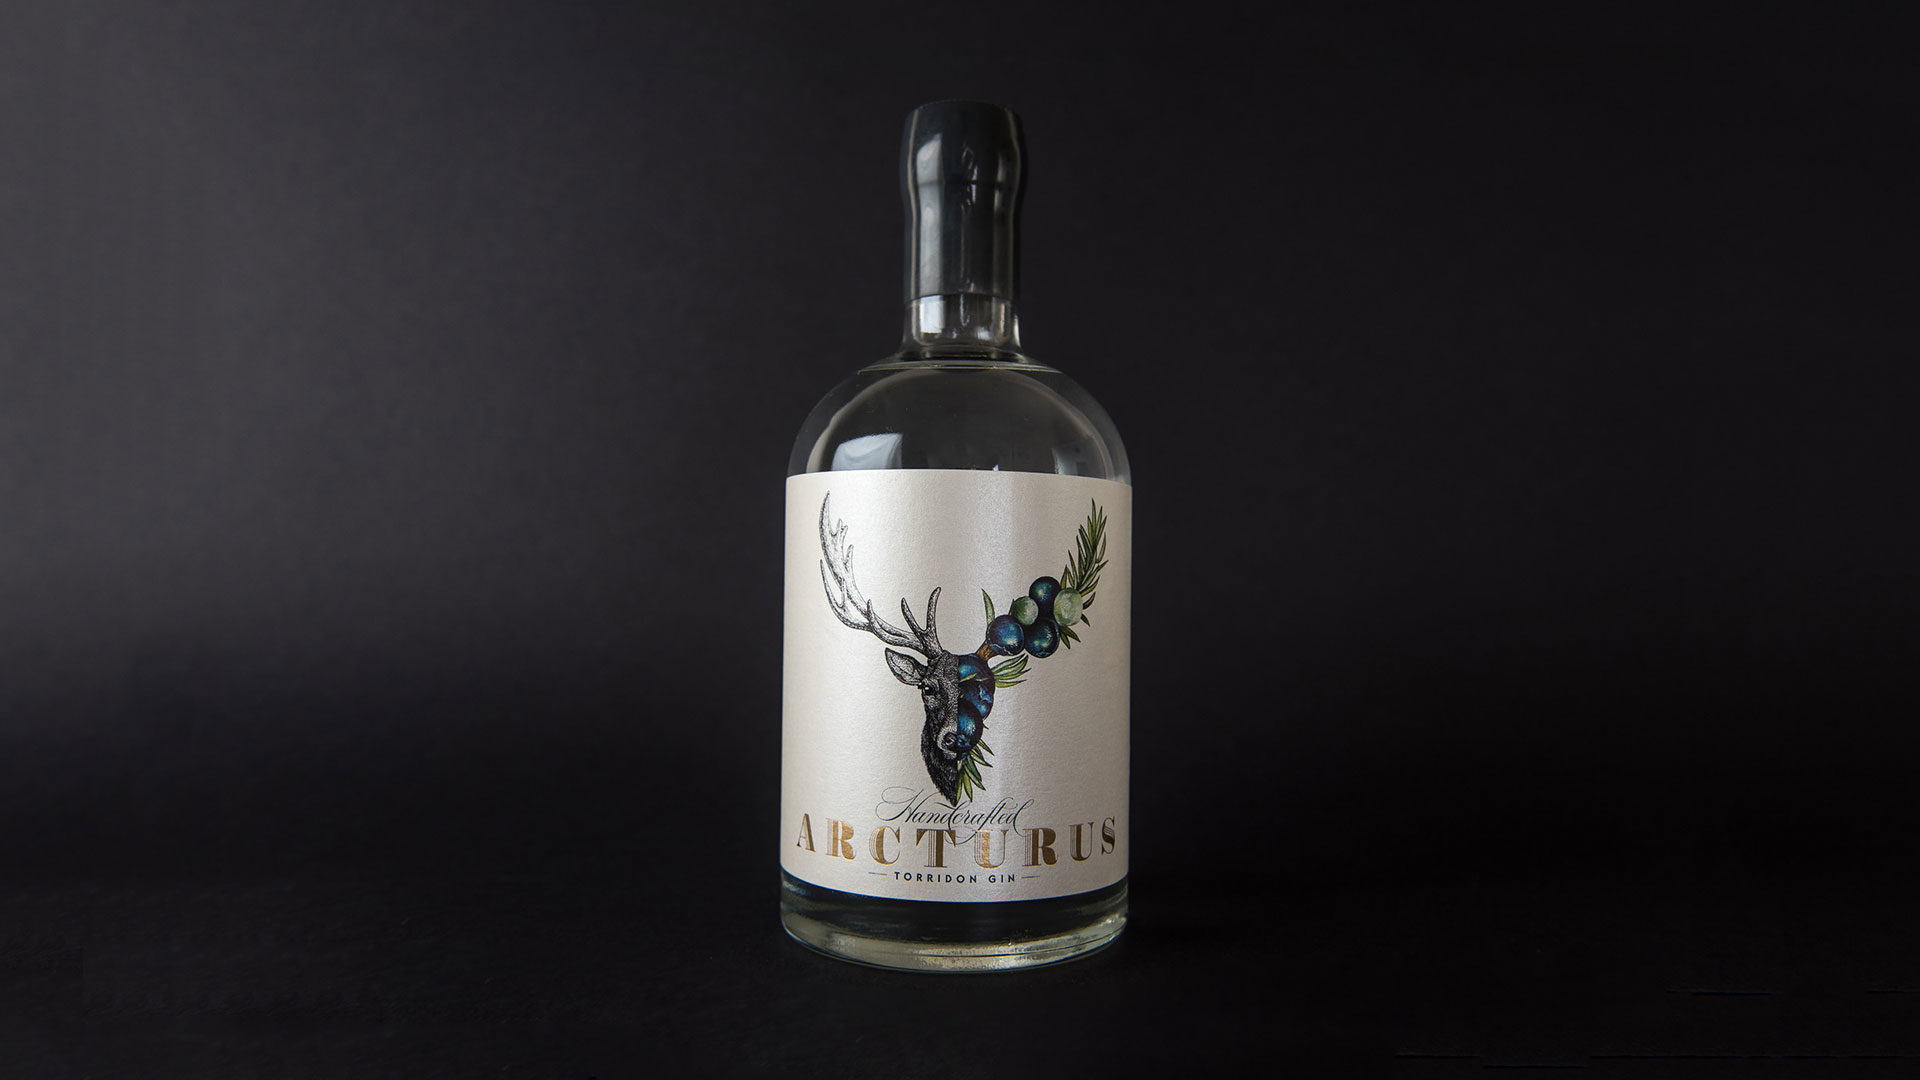 Arcturus nominated at Gin Awards 2018